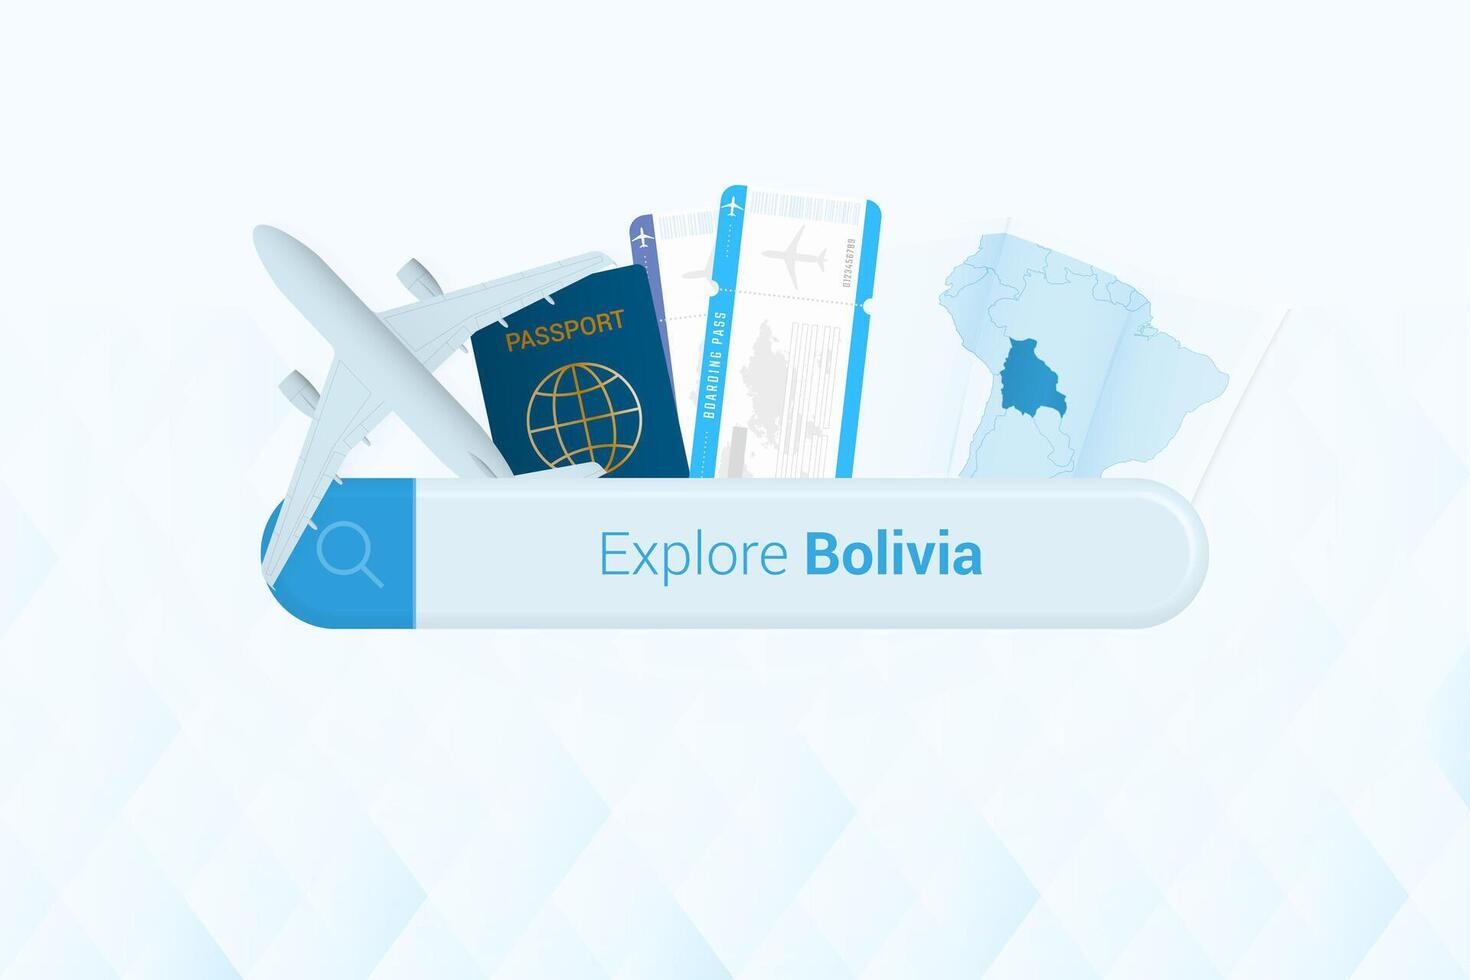 recherche des billets à Bolivie ou Voyage destination dans Bolivie. recherche bar avec avion, passeport, embarquement passer, des billets et carte. vecteur